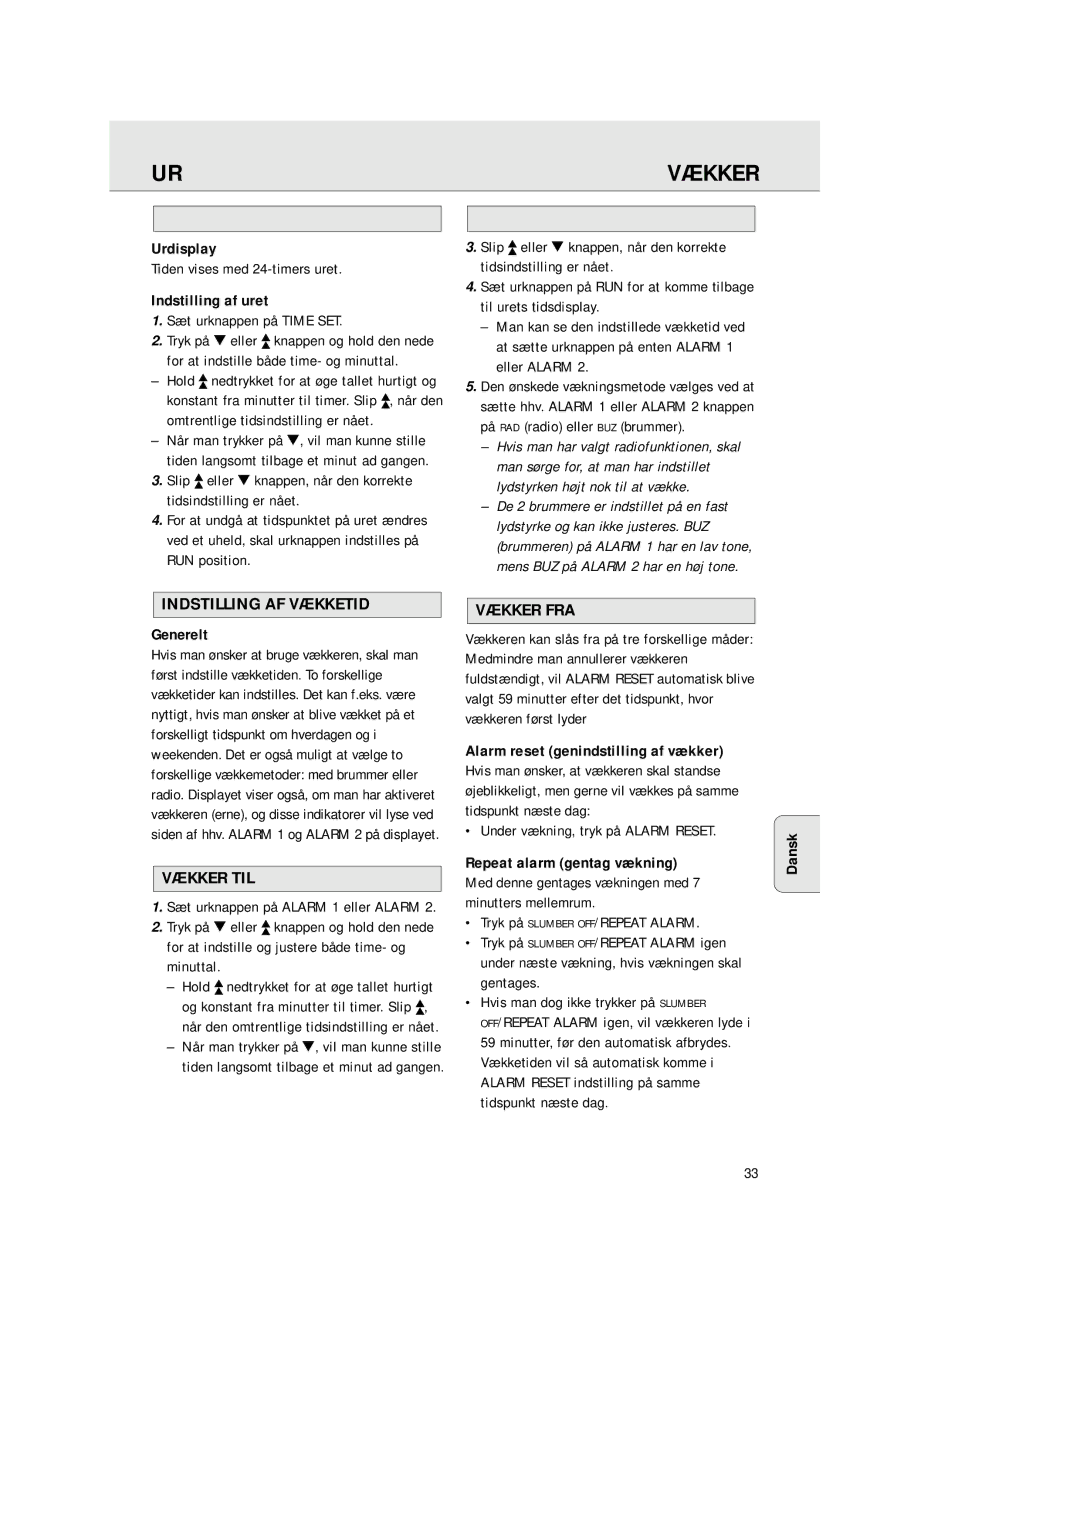 Philips AJ 3380 manual Indstilling AF Vækketid, Vækker TIL, Vækker FRA 